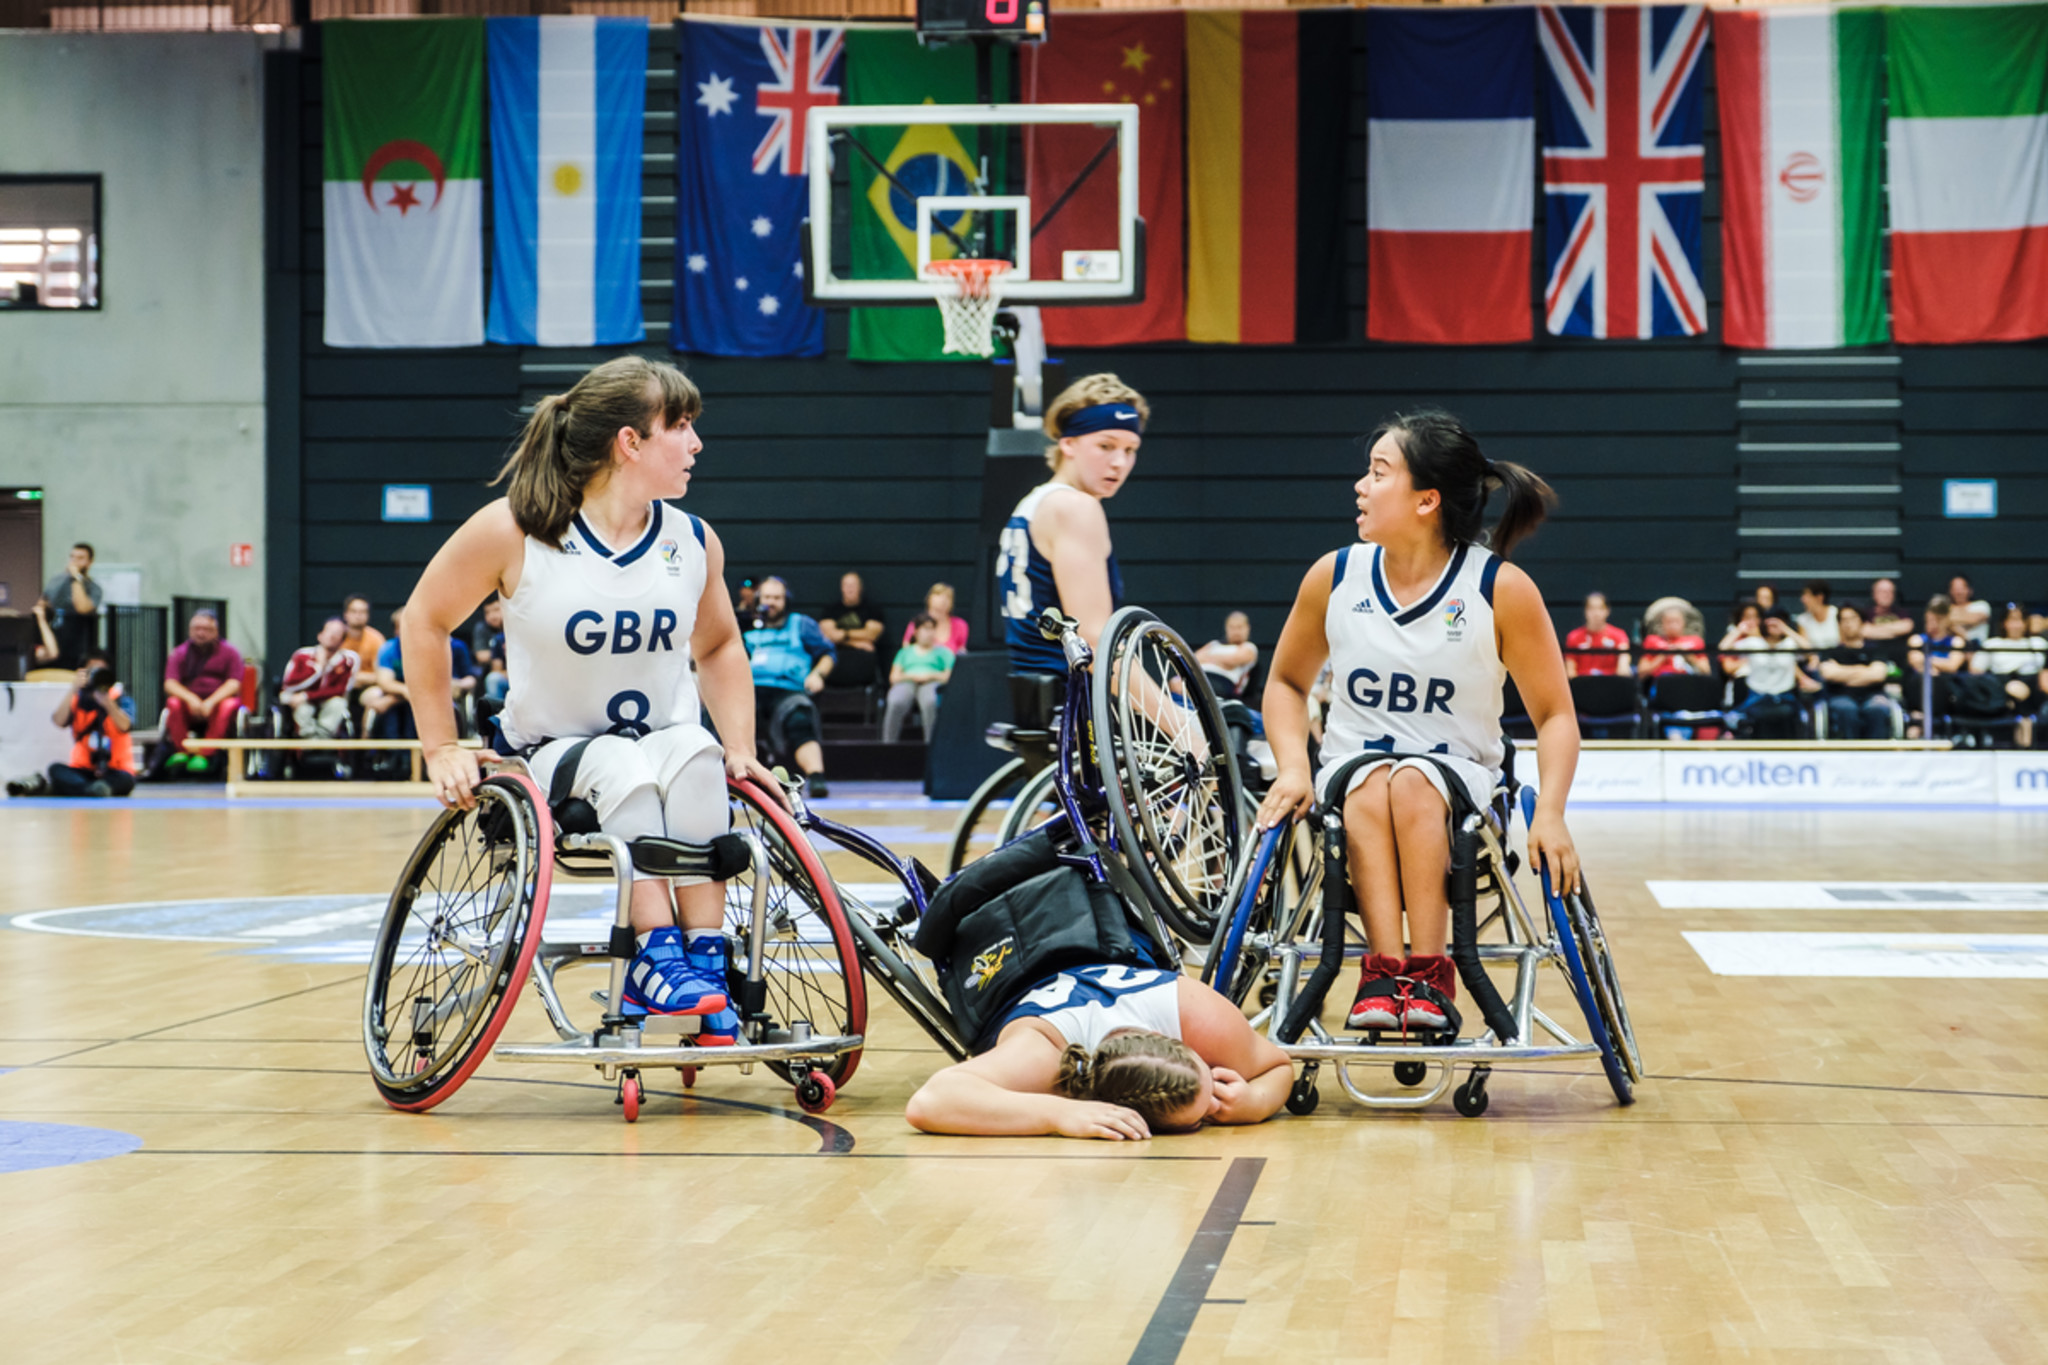 Frauen spielen Rollstuhlbasketball. Eine liegt am Boden im Rollstuhl und verzieht schmerzhaft das Gesicht.